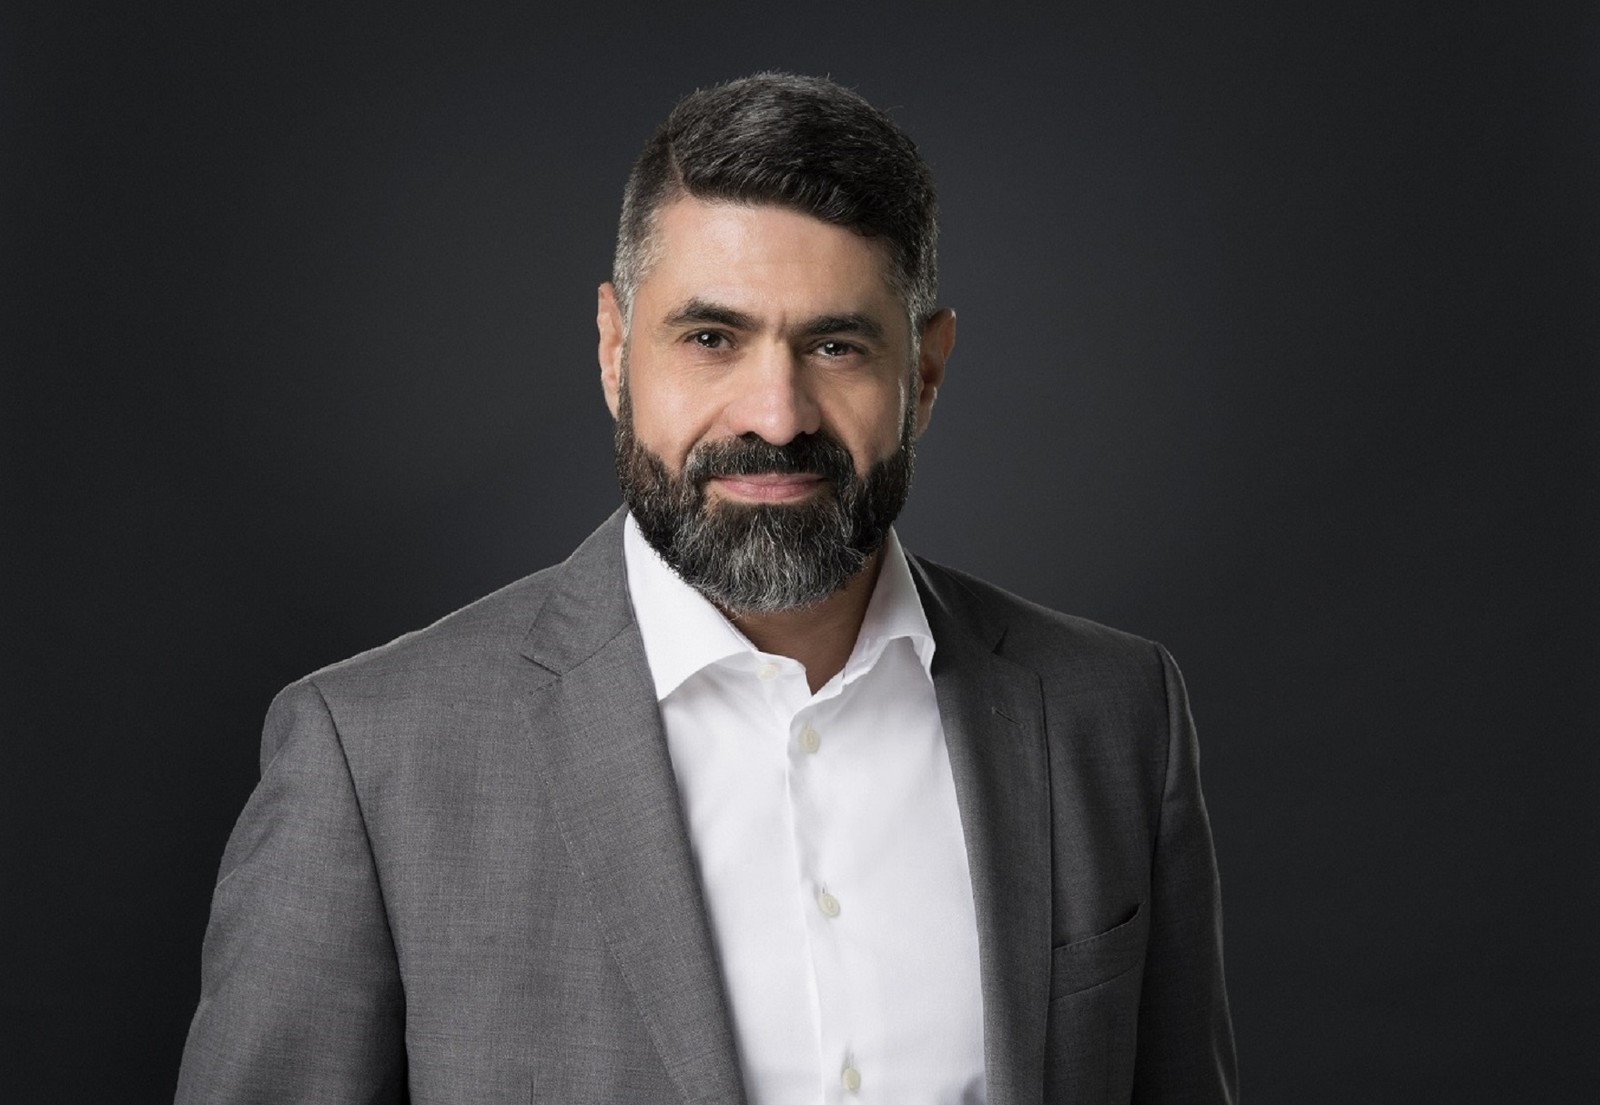 أحمد عودة نائب الرئيس والمدير العام للشركة في منطقة الشرق الأوسط وتركيا وشمال إفريقيا